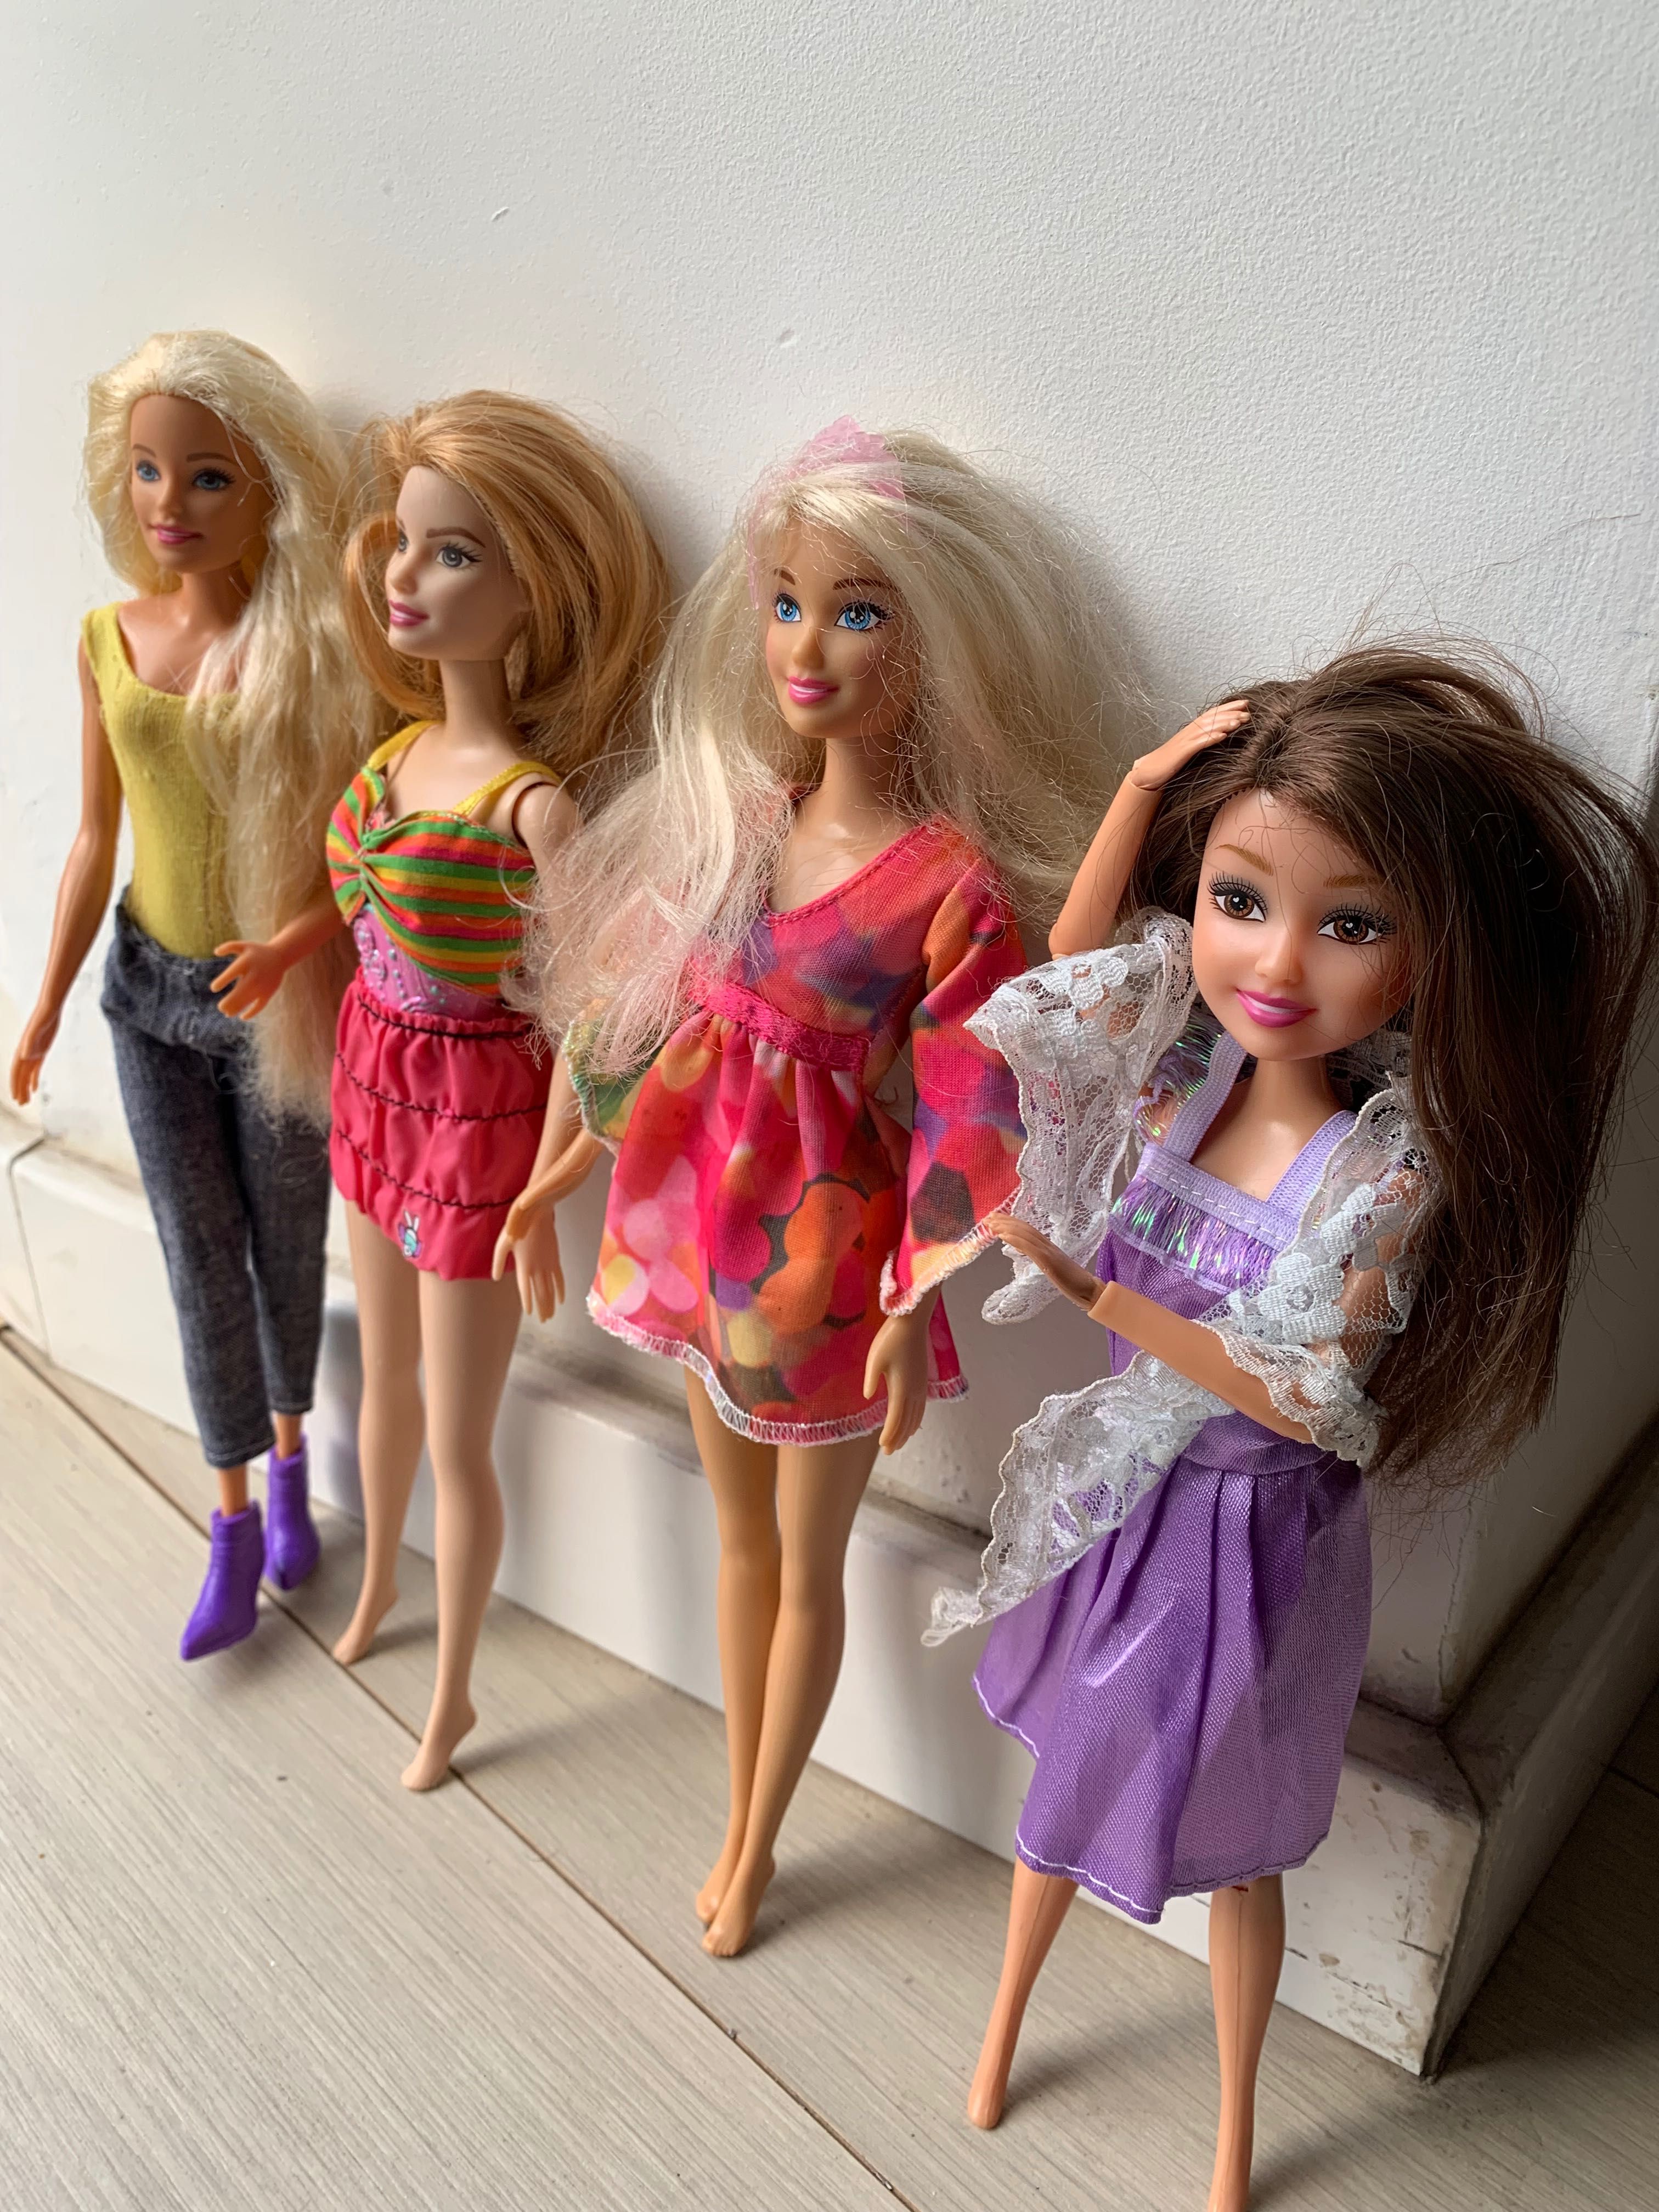 Bonecas Barbie’s Originais da Mattel